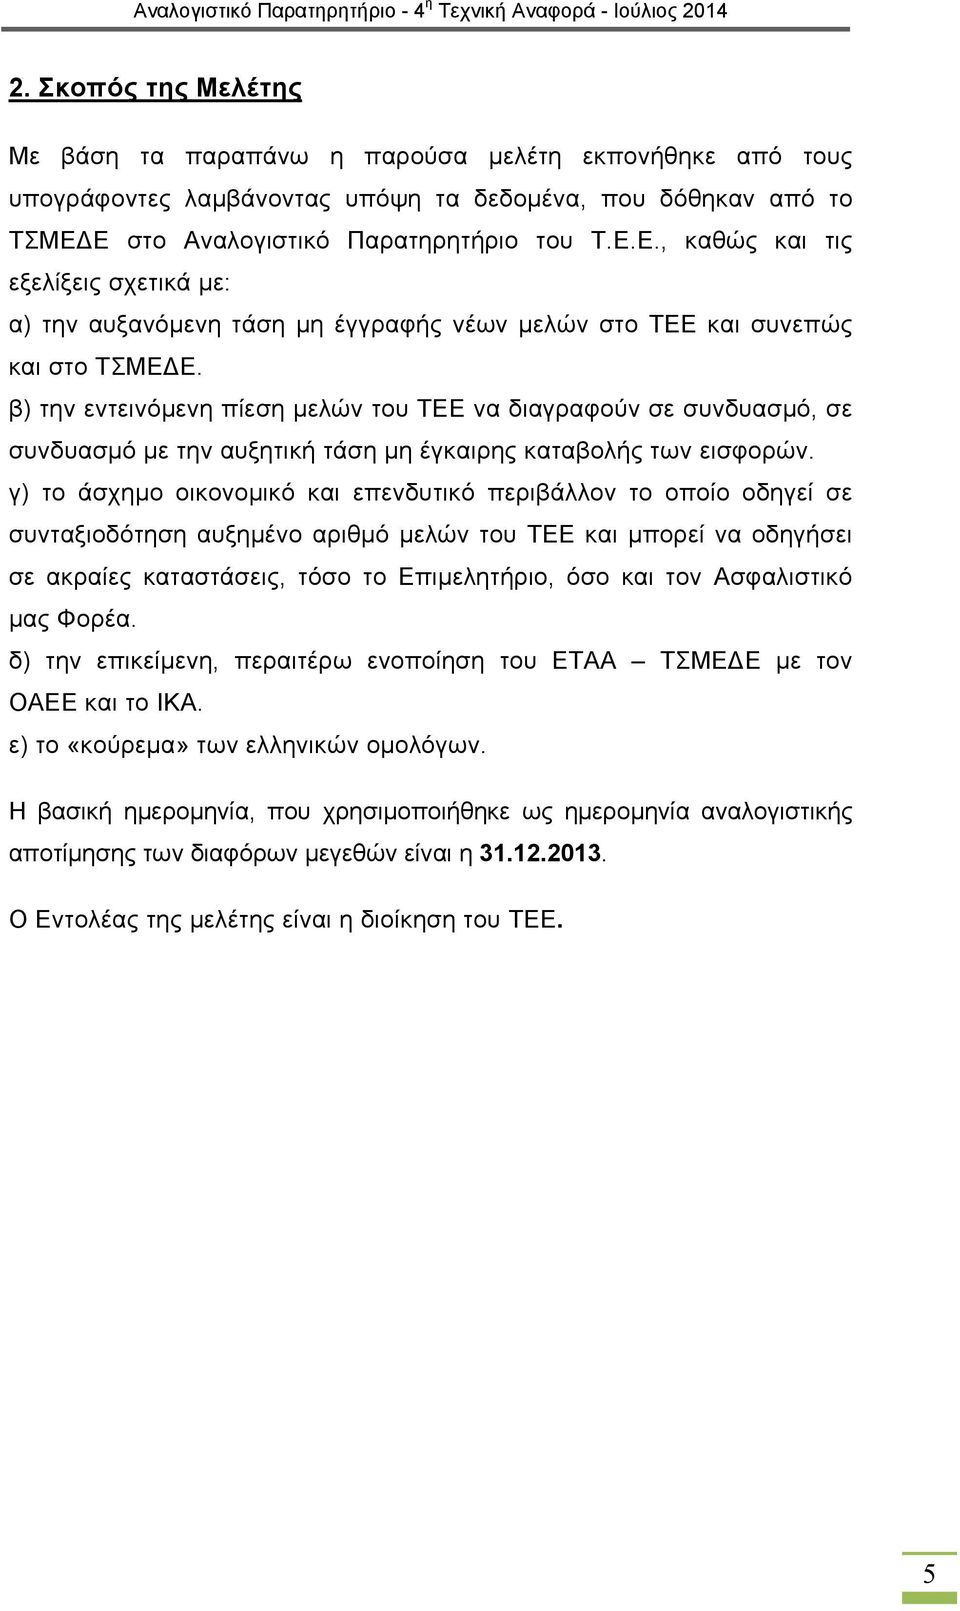 β) την εντεινόμενη πίεση μελών του ΤΕΕ να διαγραφούν σε συνδυασμό, σε συνδυασμό με την αυξητική τάση μη έγκαιρης καταβολής των εισφορών.